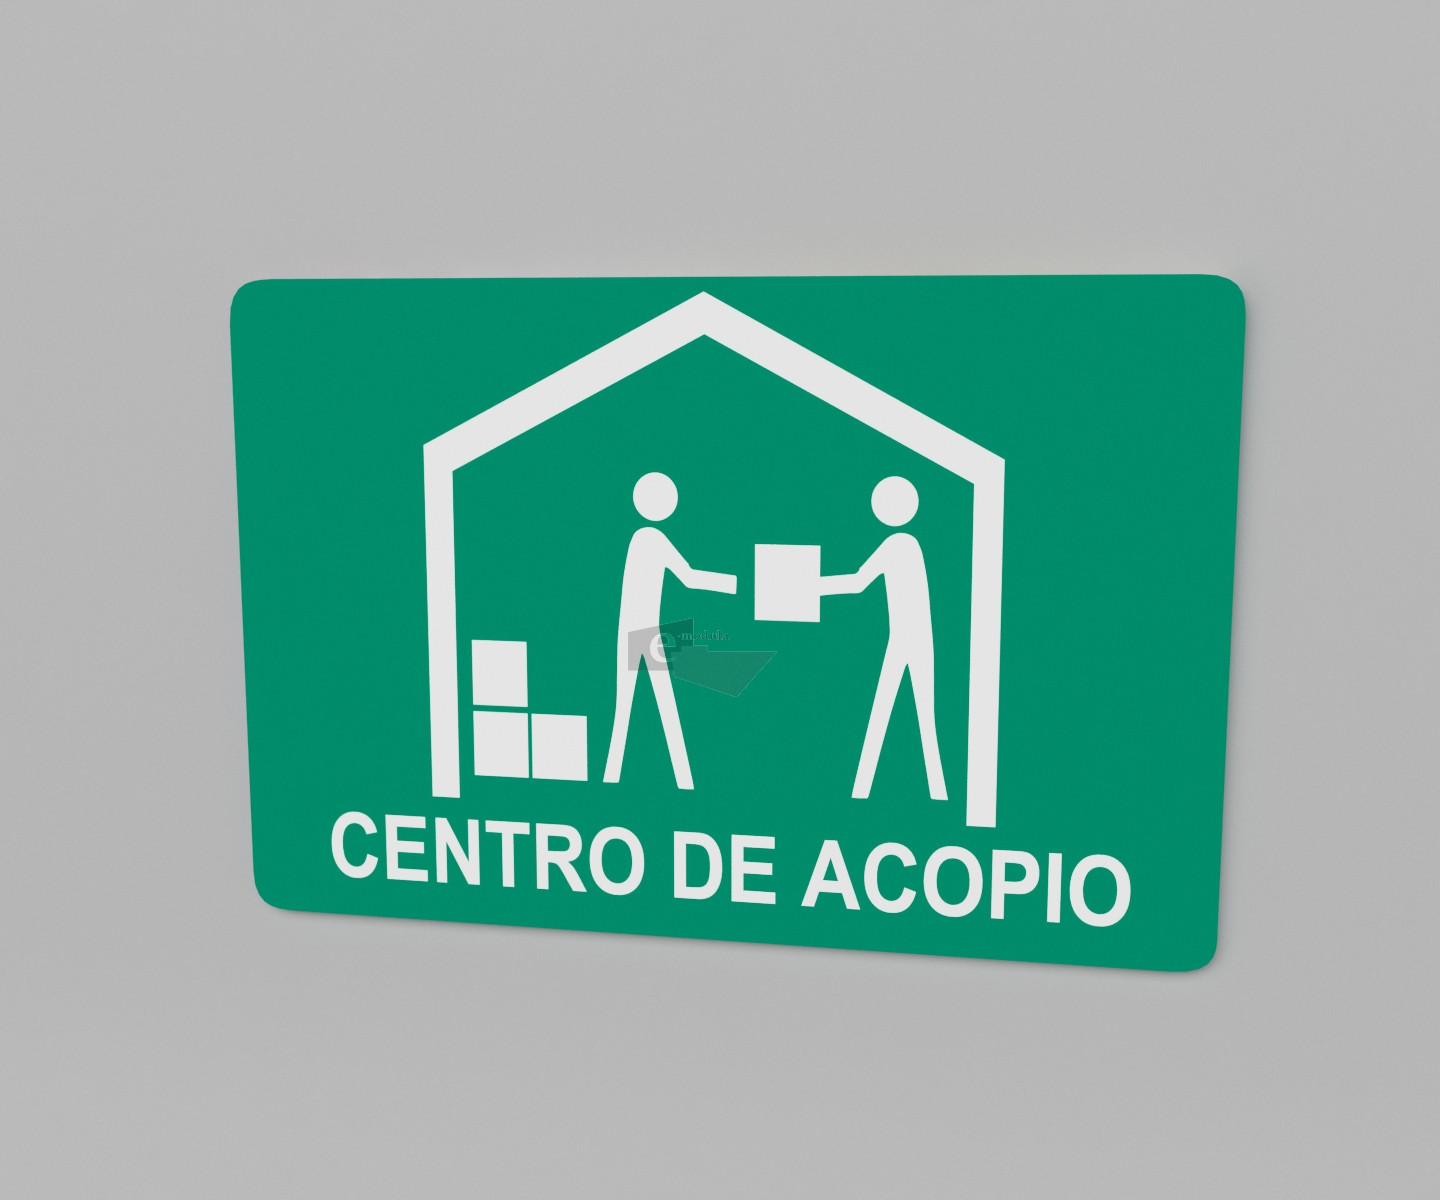 Señal / letrero / protección civil / centro de acopio / verde